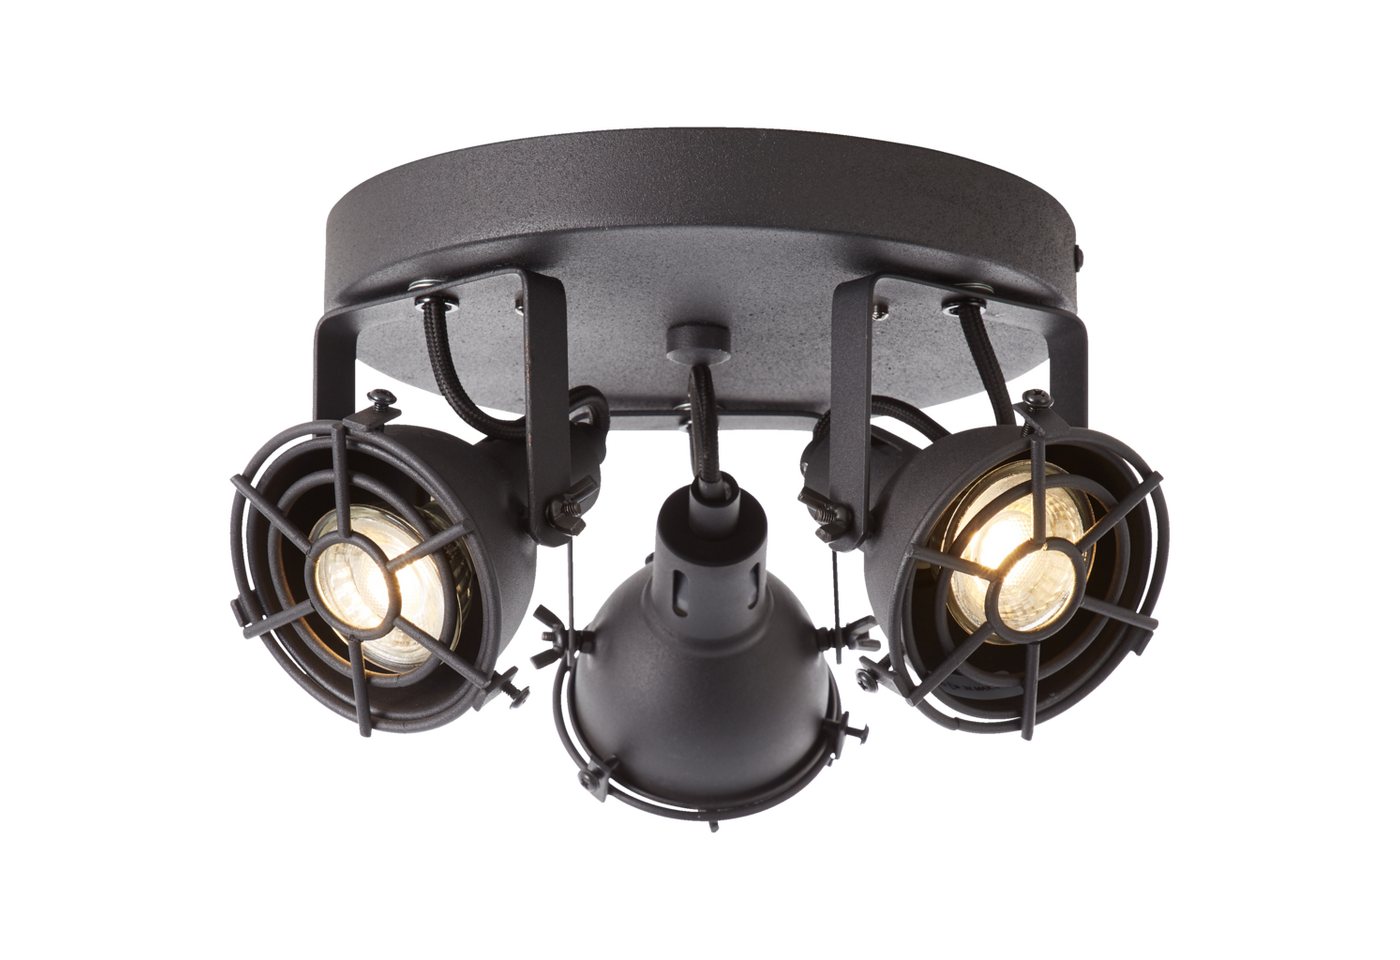 Lightbox Deckenleuchte, LED wechselbar, warmweiß, Spotrondell, schwenkbar, 15 cm, Ø 24 cm, 3 x GU10, 345 lm, inkl. LEDs von Lightbox